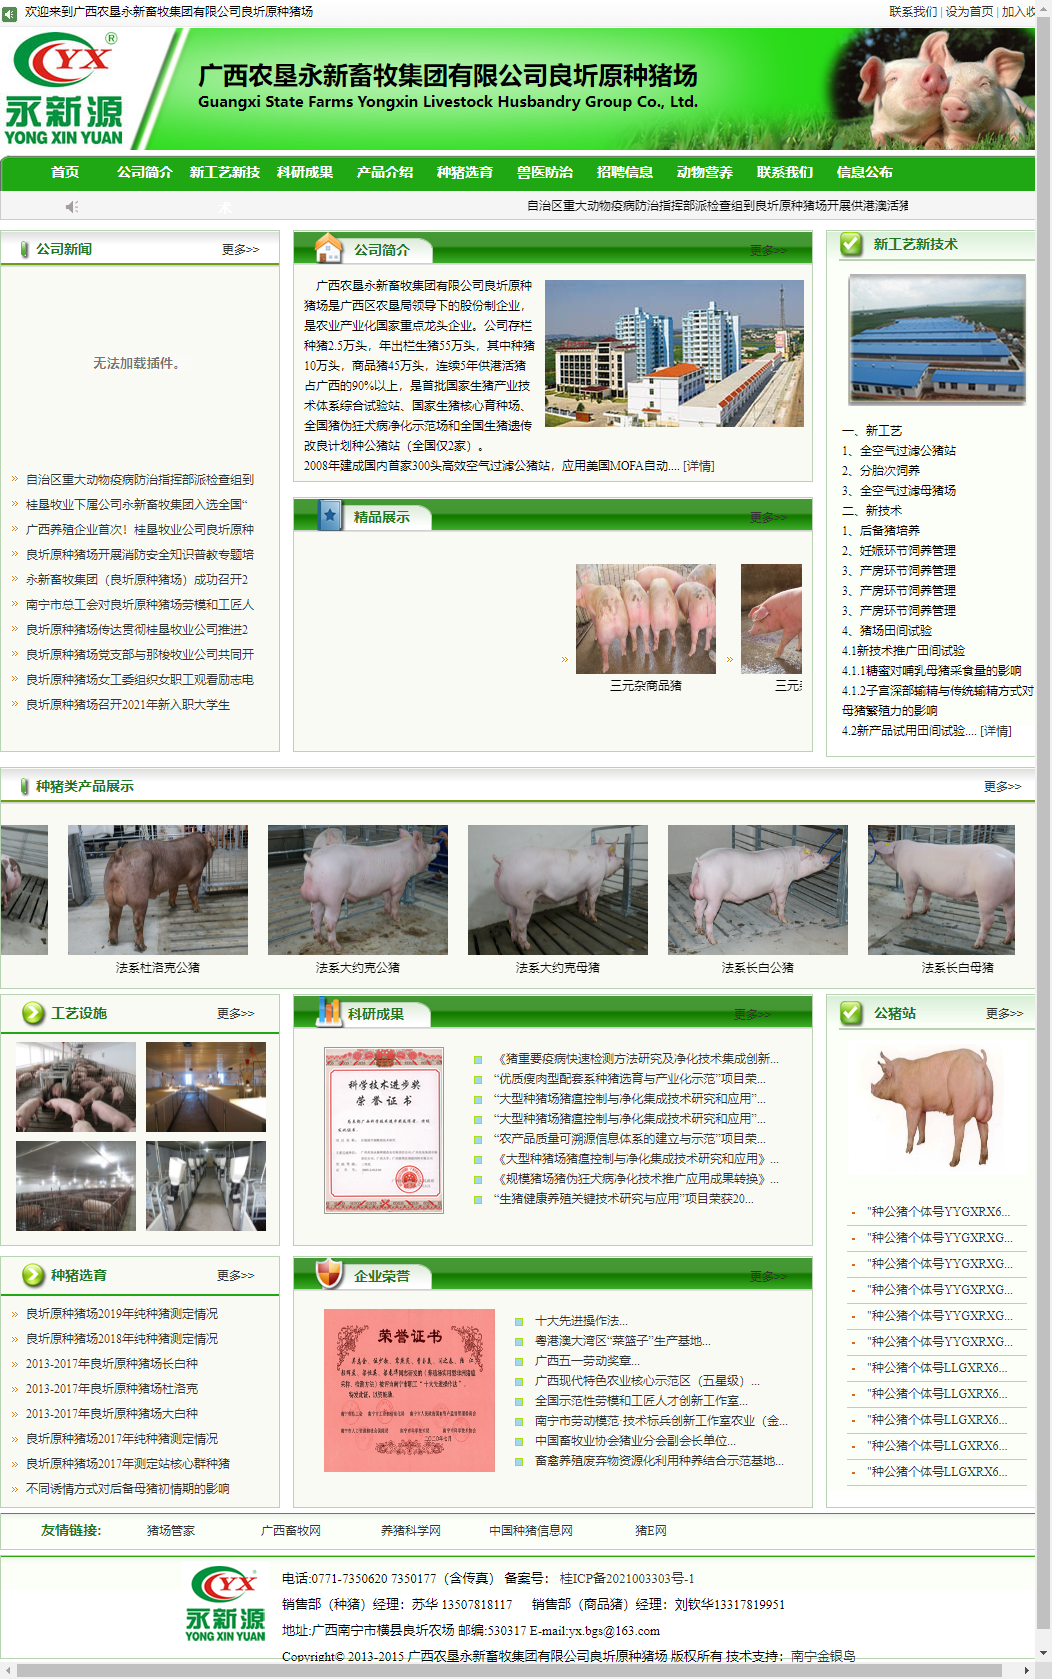 广西农垦永新畜牧集团有限公司良圻原种猪场网站案例